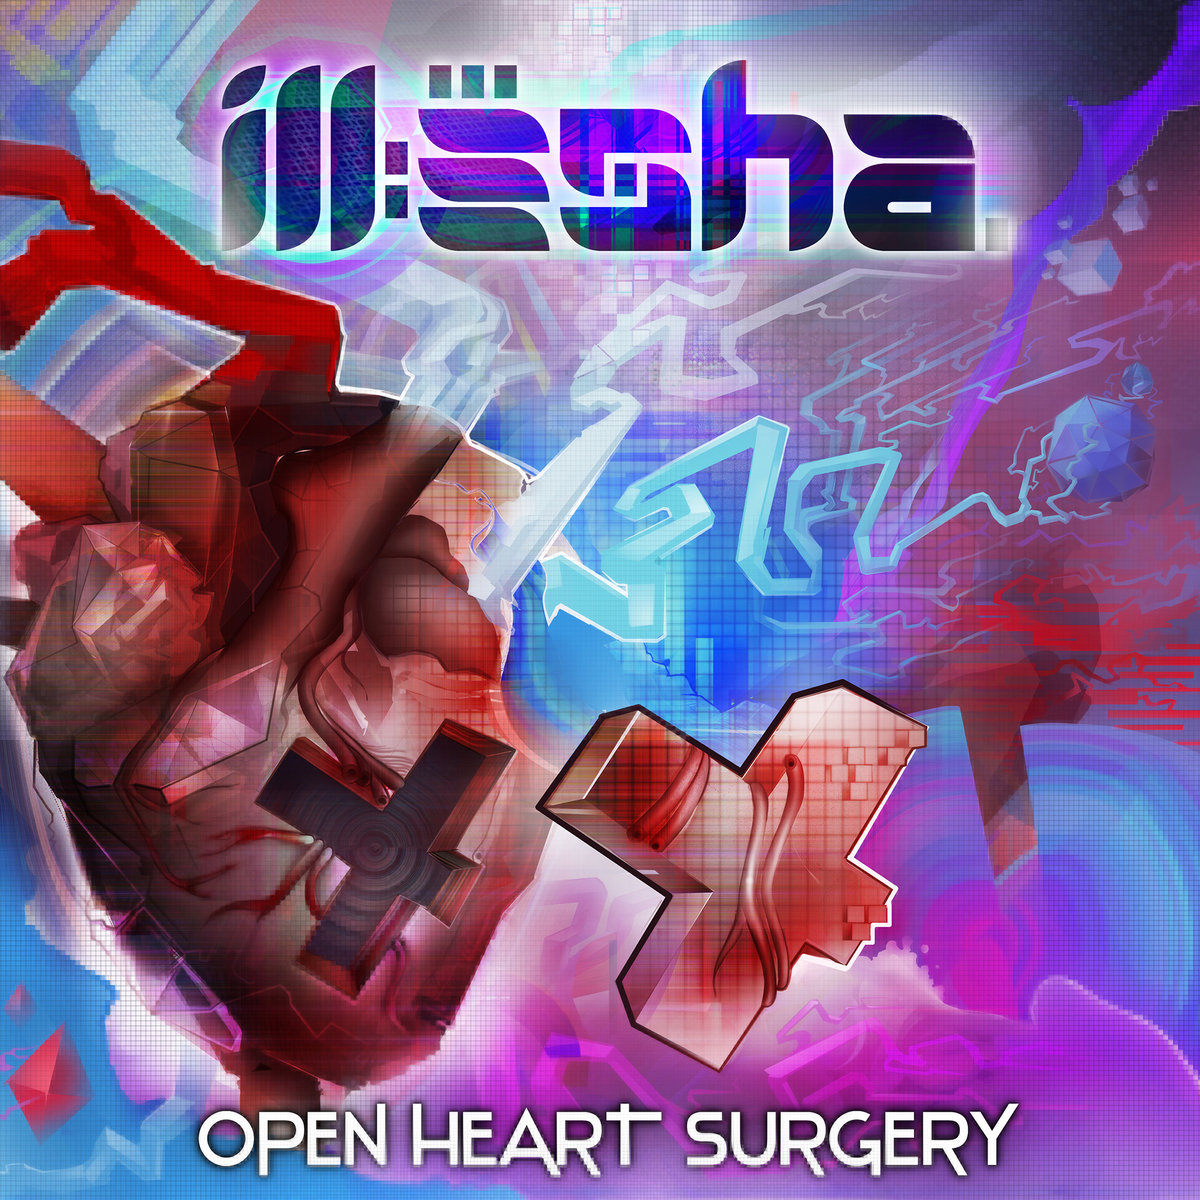 ill-esha - High Voltage Storms @ 'Open Heart Surgery' album (colorado, denver)